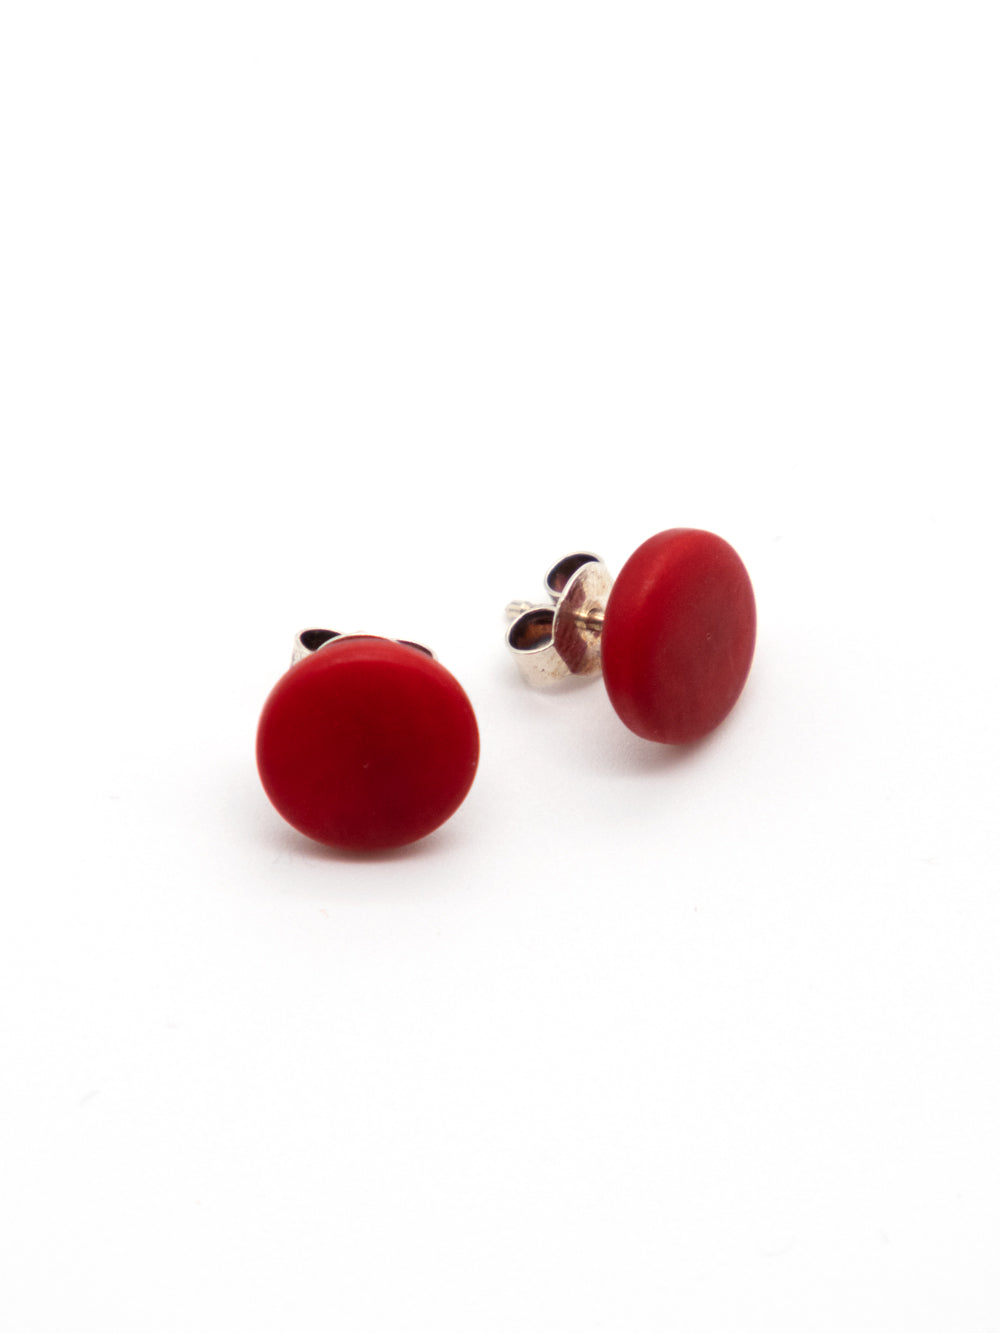 Stud earrings Topo red - LaTagua nut earrings silver